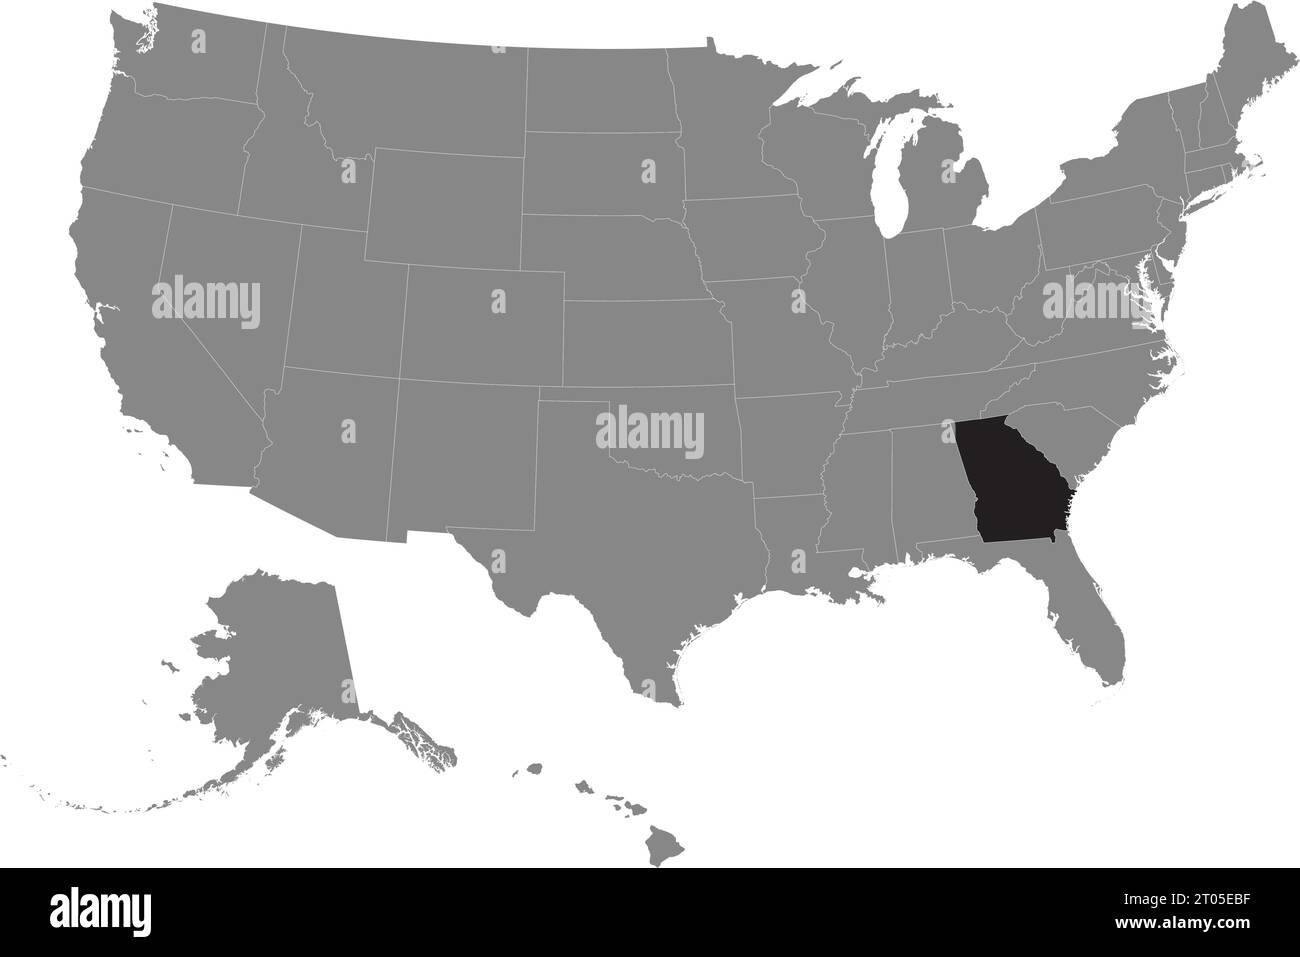 Schwarze CMYK-Bundeskarte von GEORGIA in detaillierter grauer, leerer politischer Karte der Vereinigten Staaten von Amerika auf transparentem Hintergrund Stock Vektor